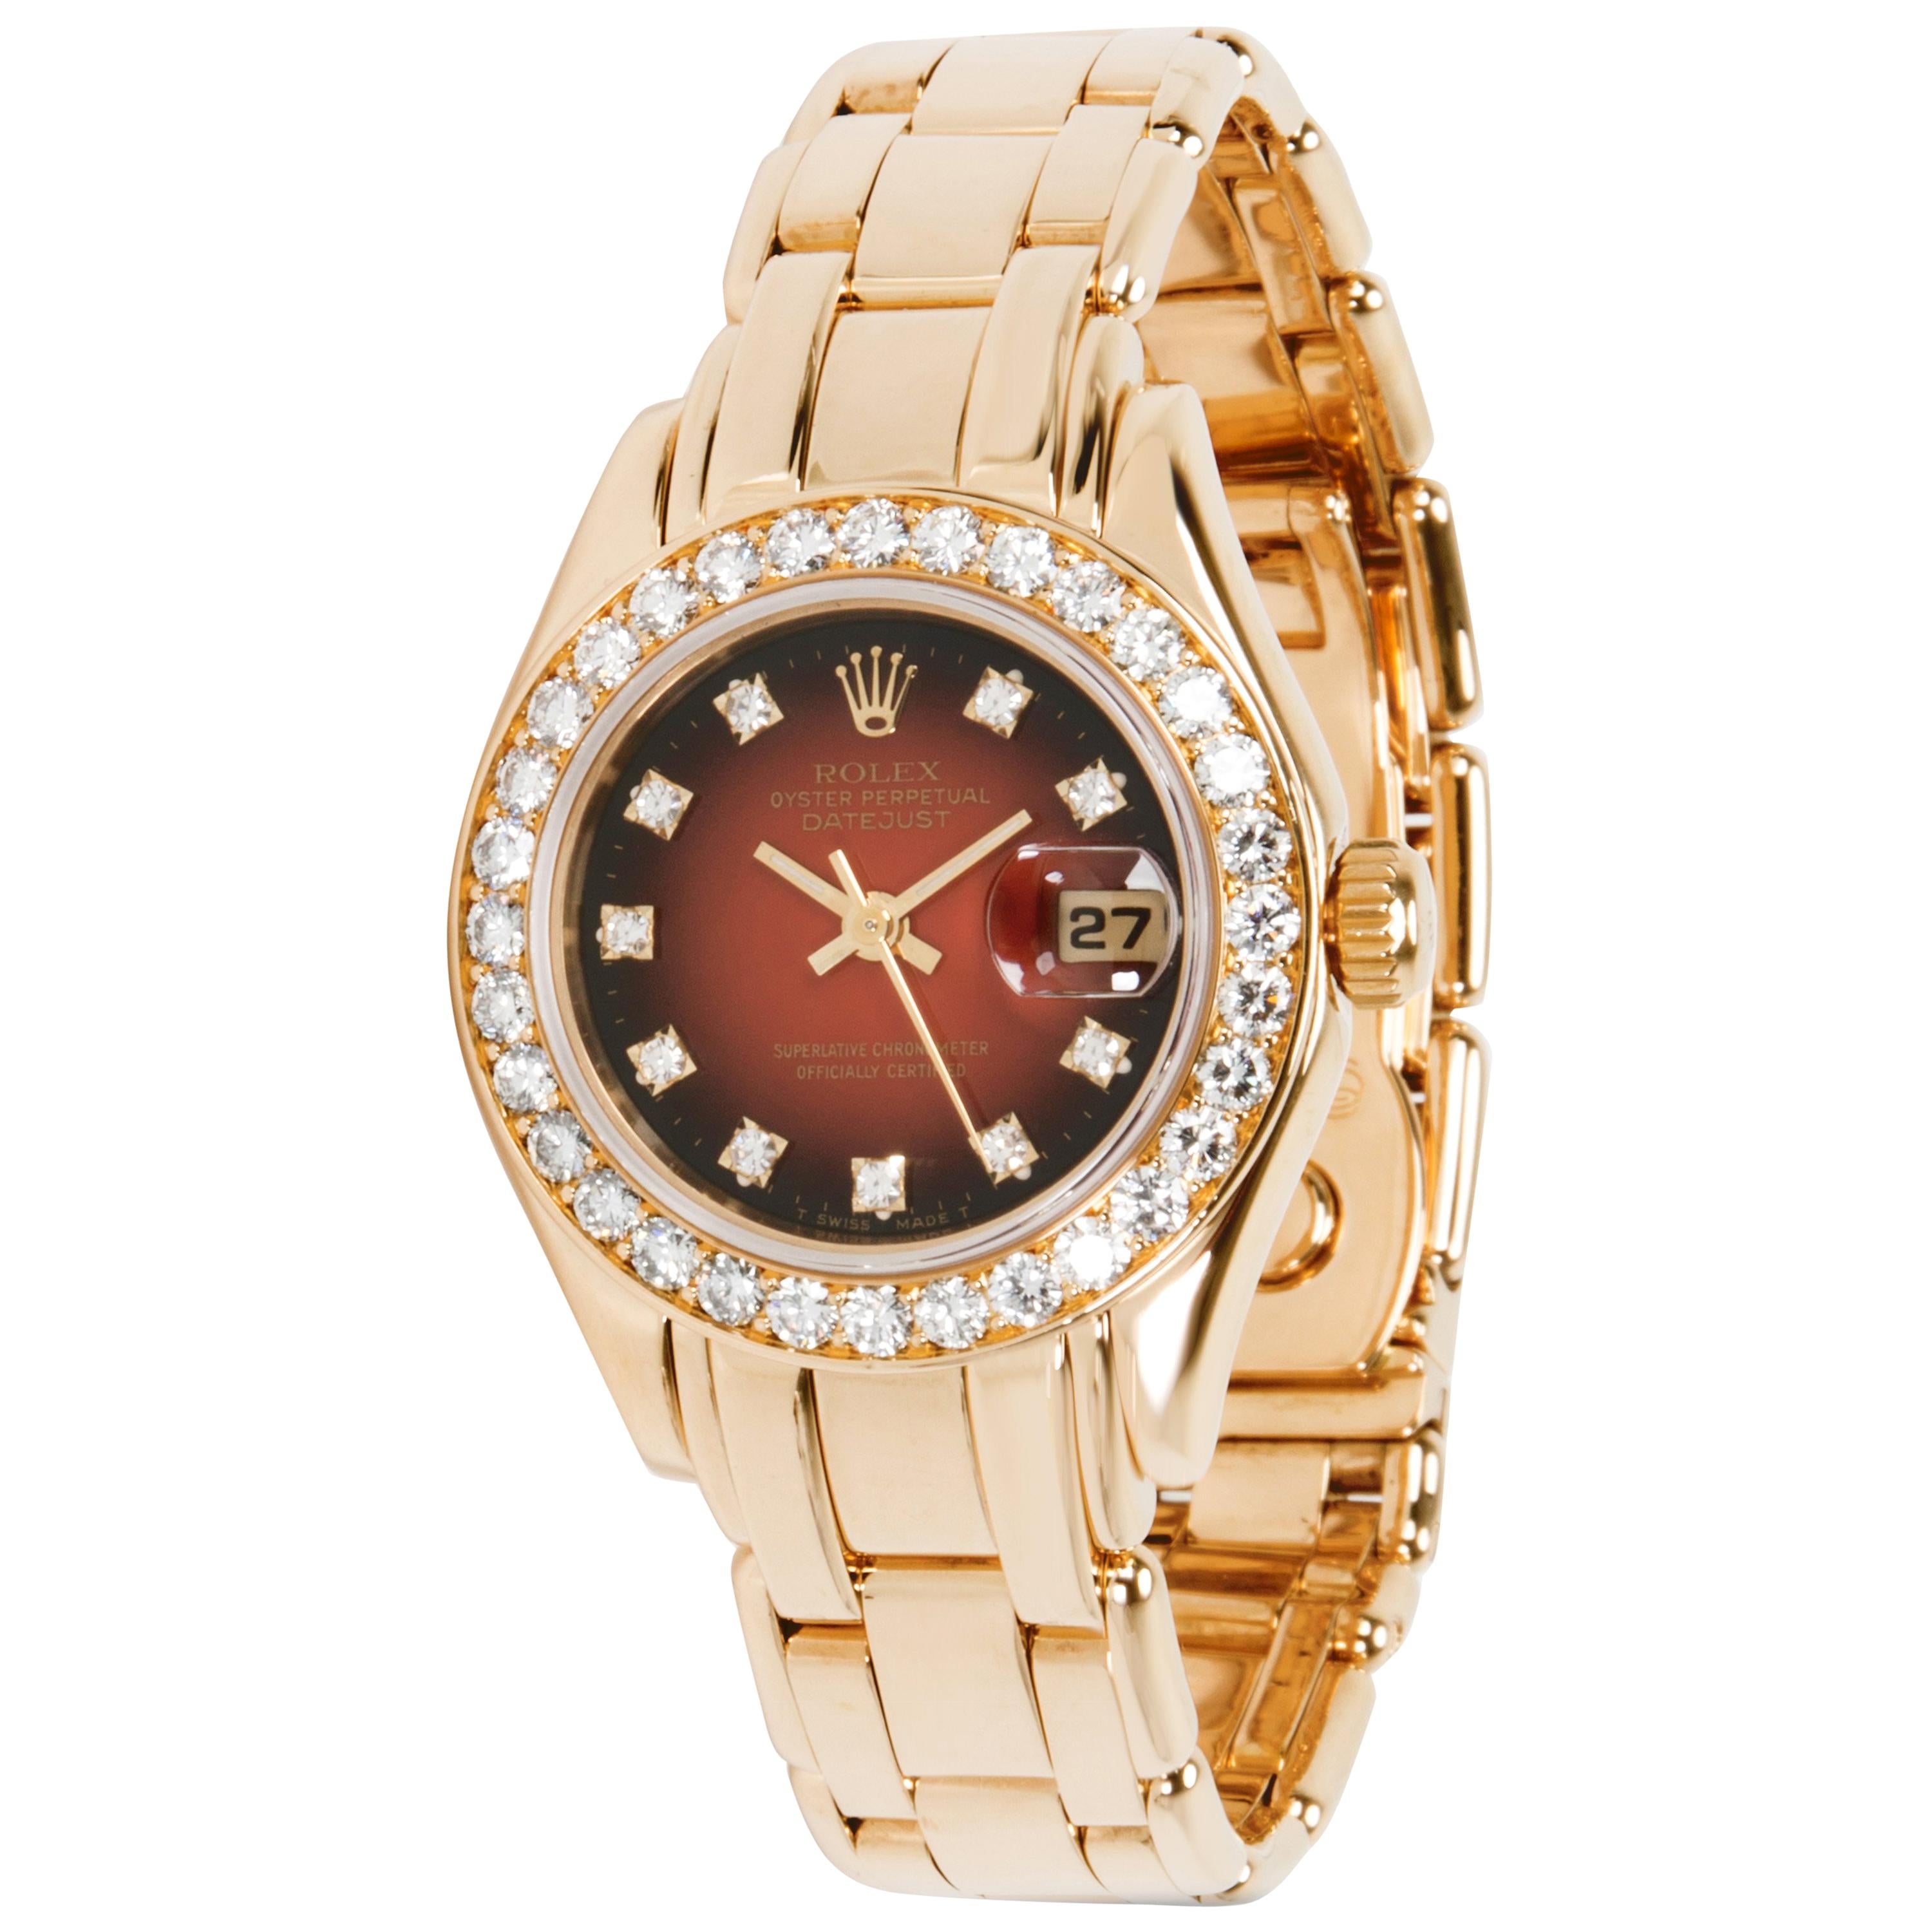 Rolex Pearlmaster 69298 Women's Watch in 18 Karat Yellow Gold